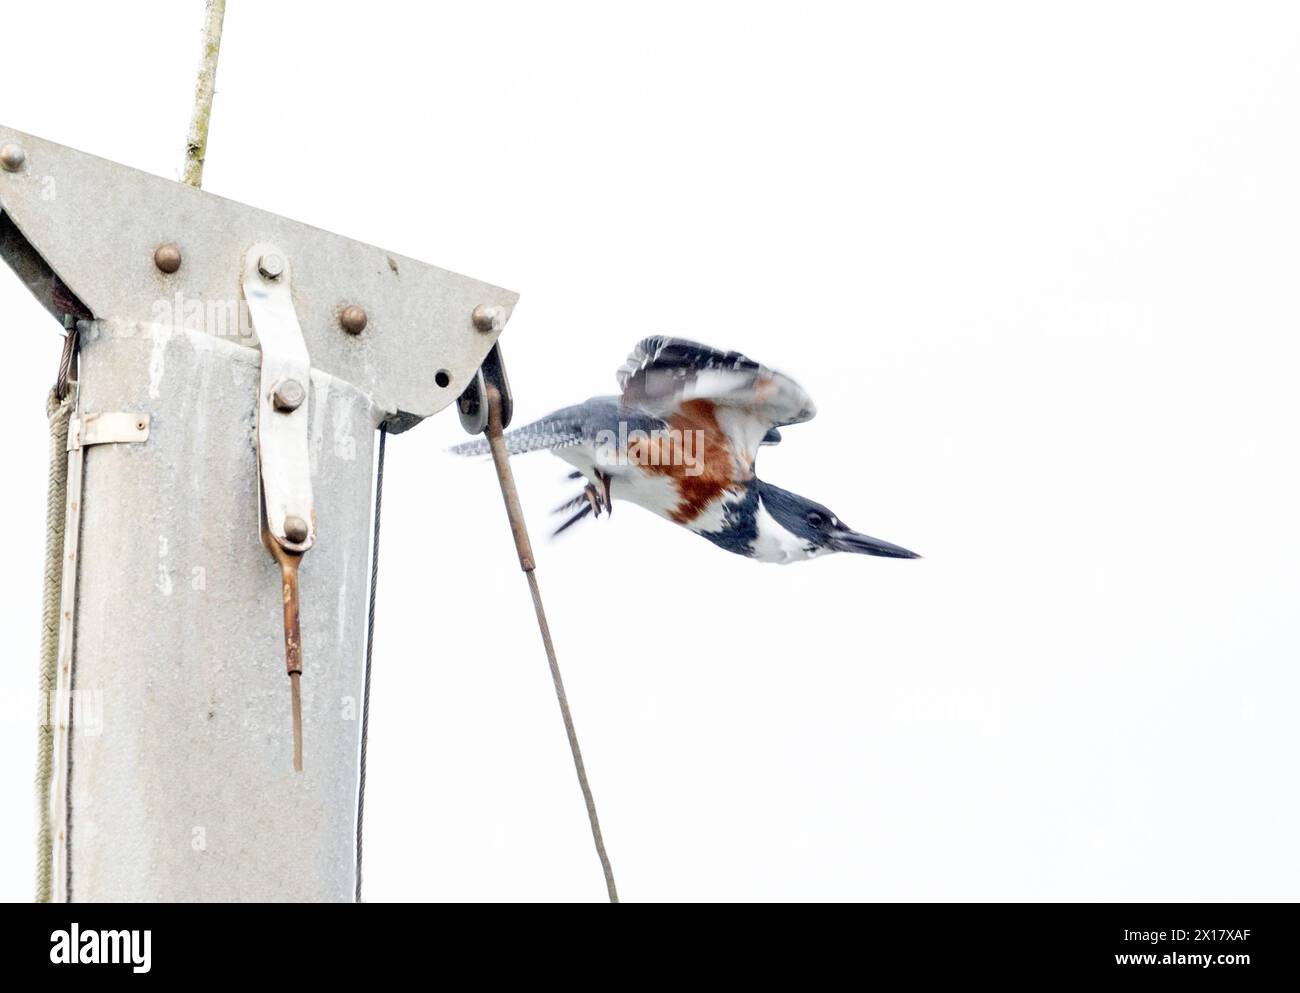 Ceinture Kingfisher femelle décollant du haut du mât du bateau Banque D'Images